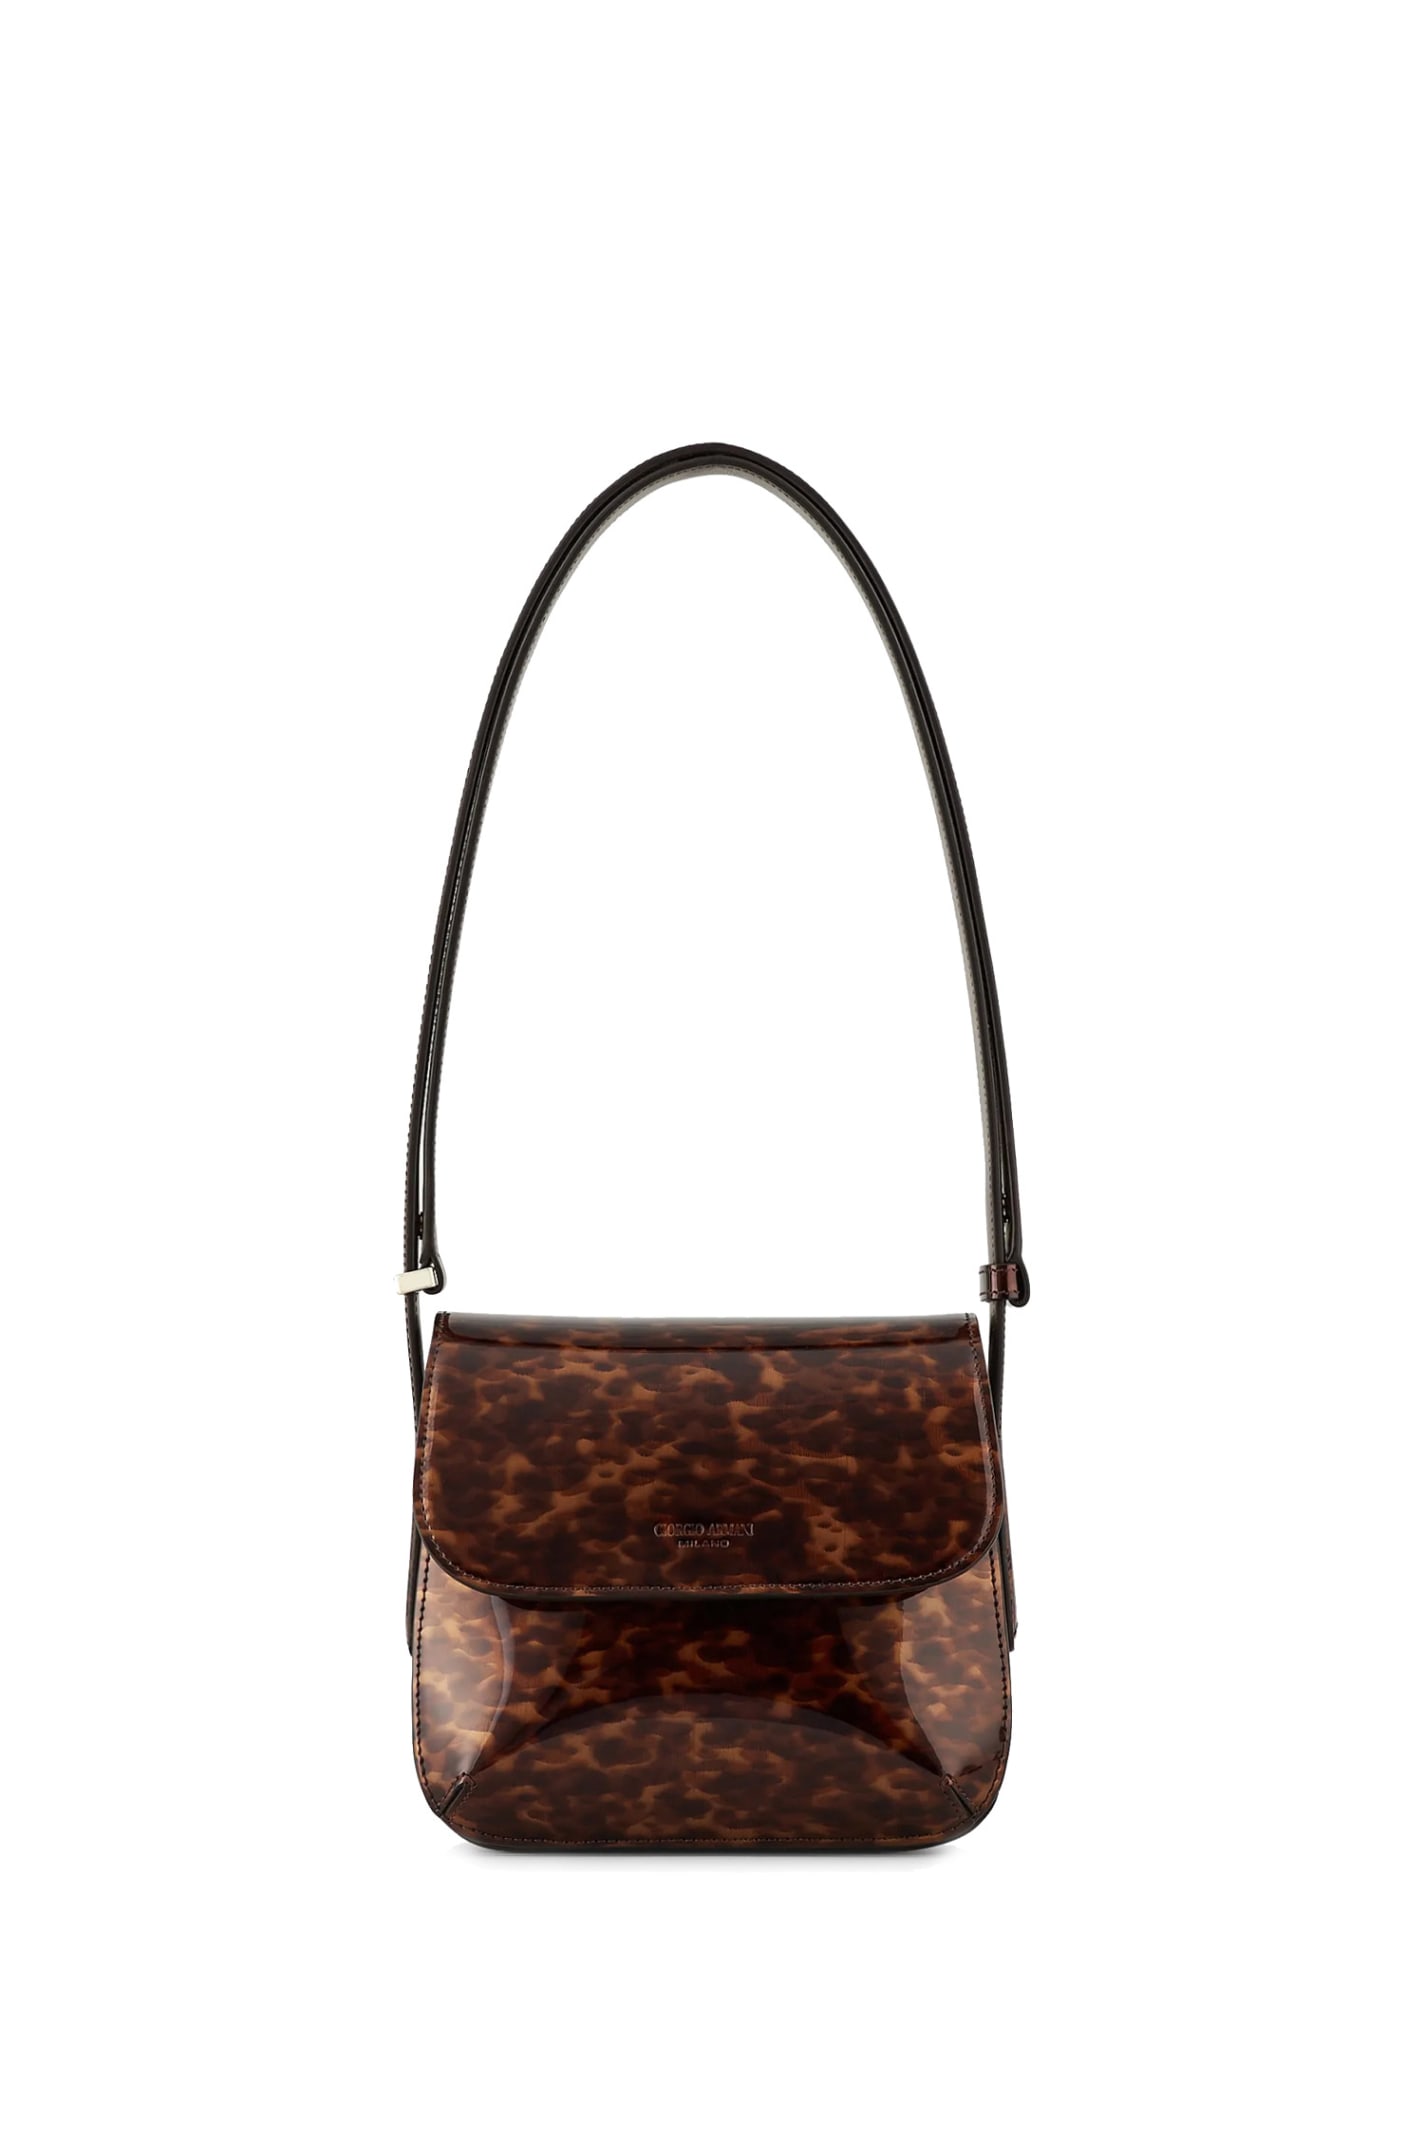 Giorgio Armani Small La Prima Bag In Tortoiseshell-design Leather